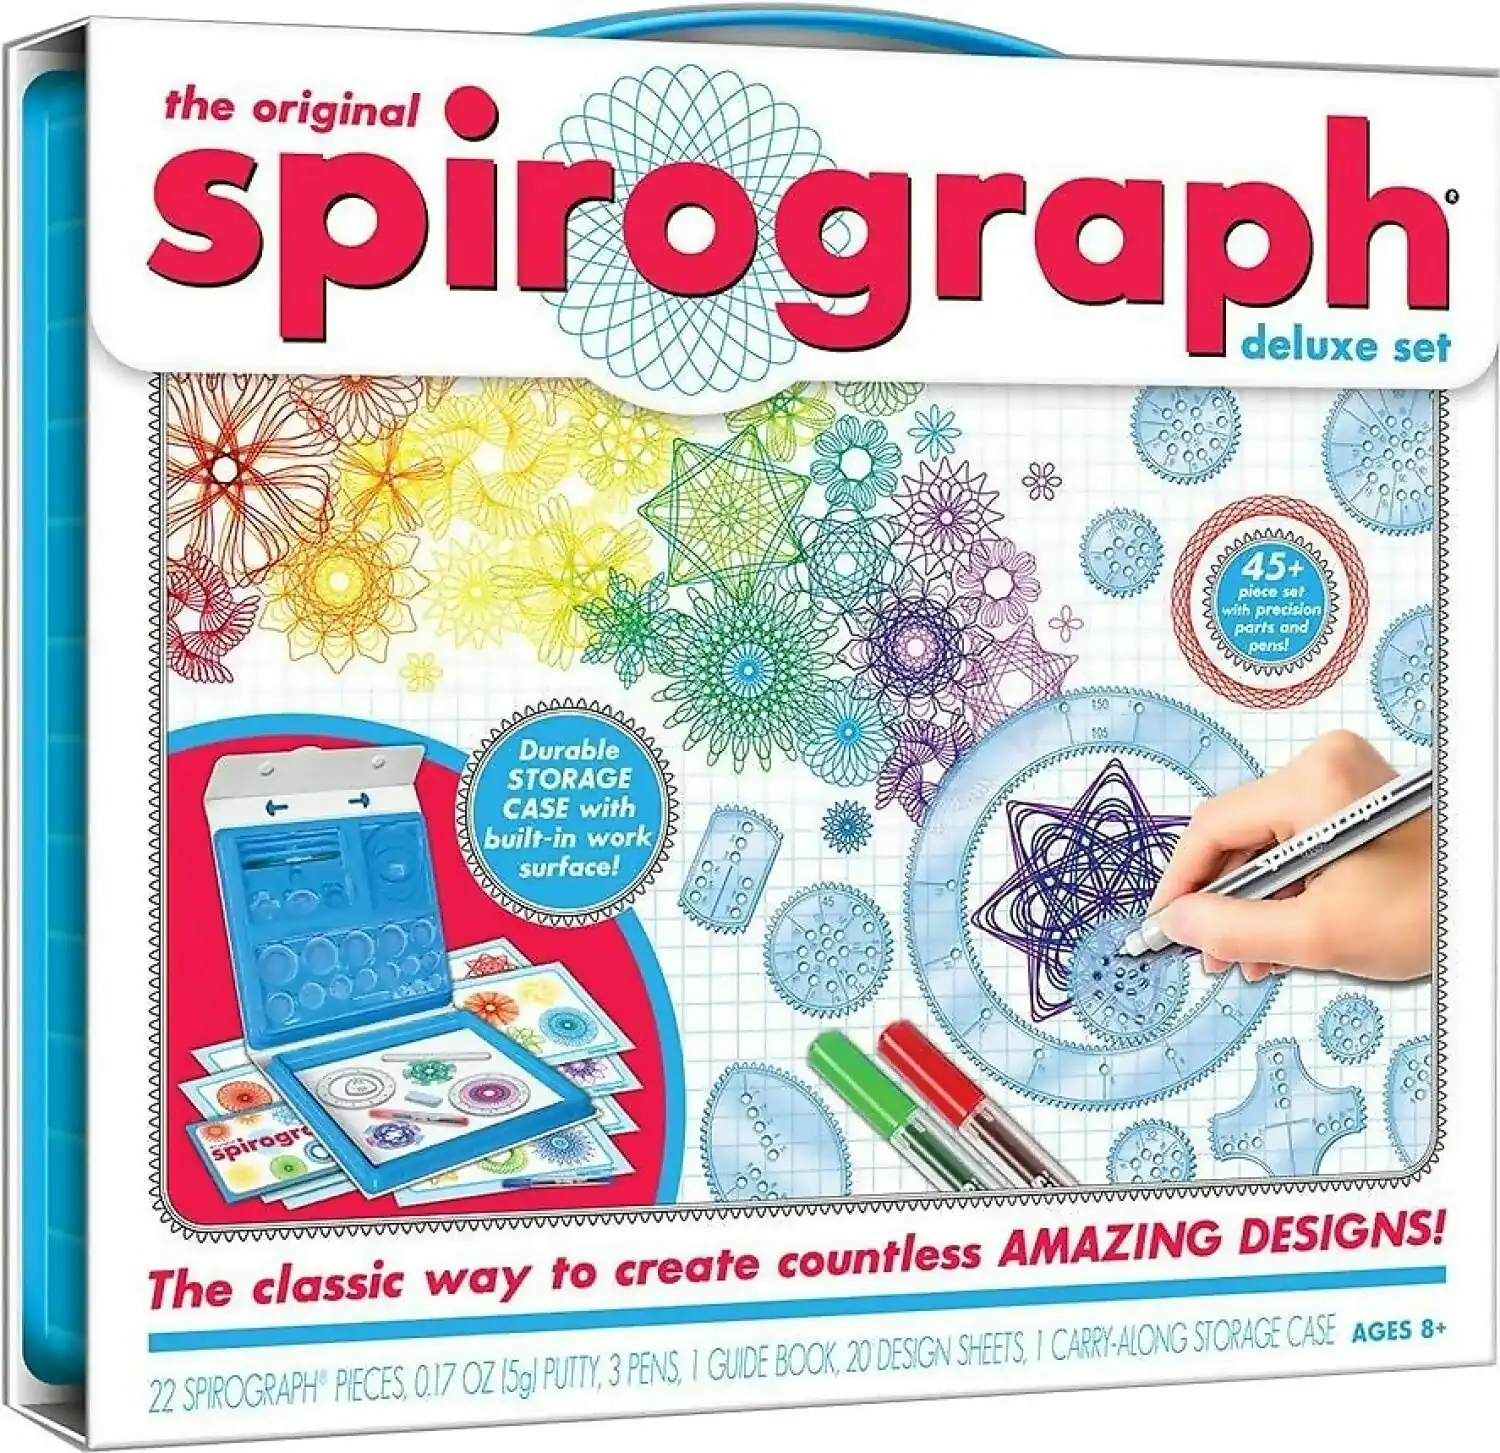 Spirograph - The Original Spirograph Deluxe Set